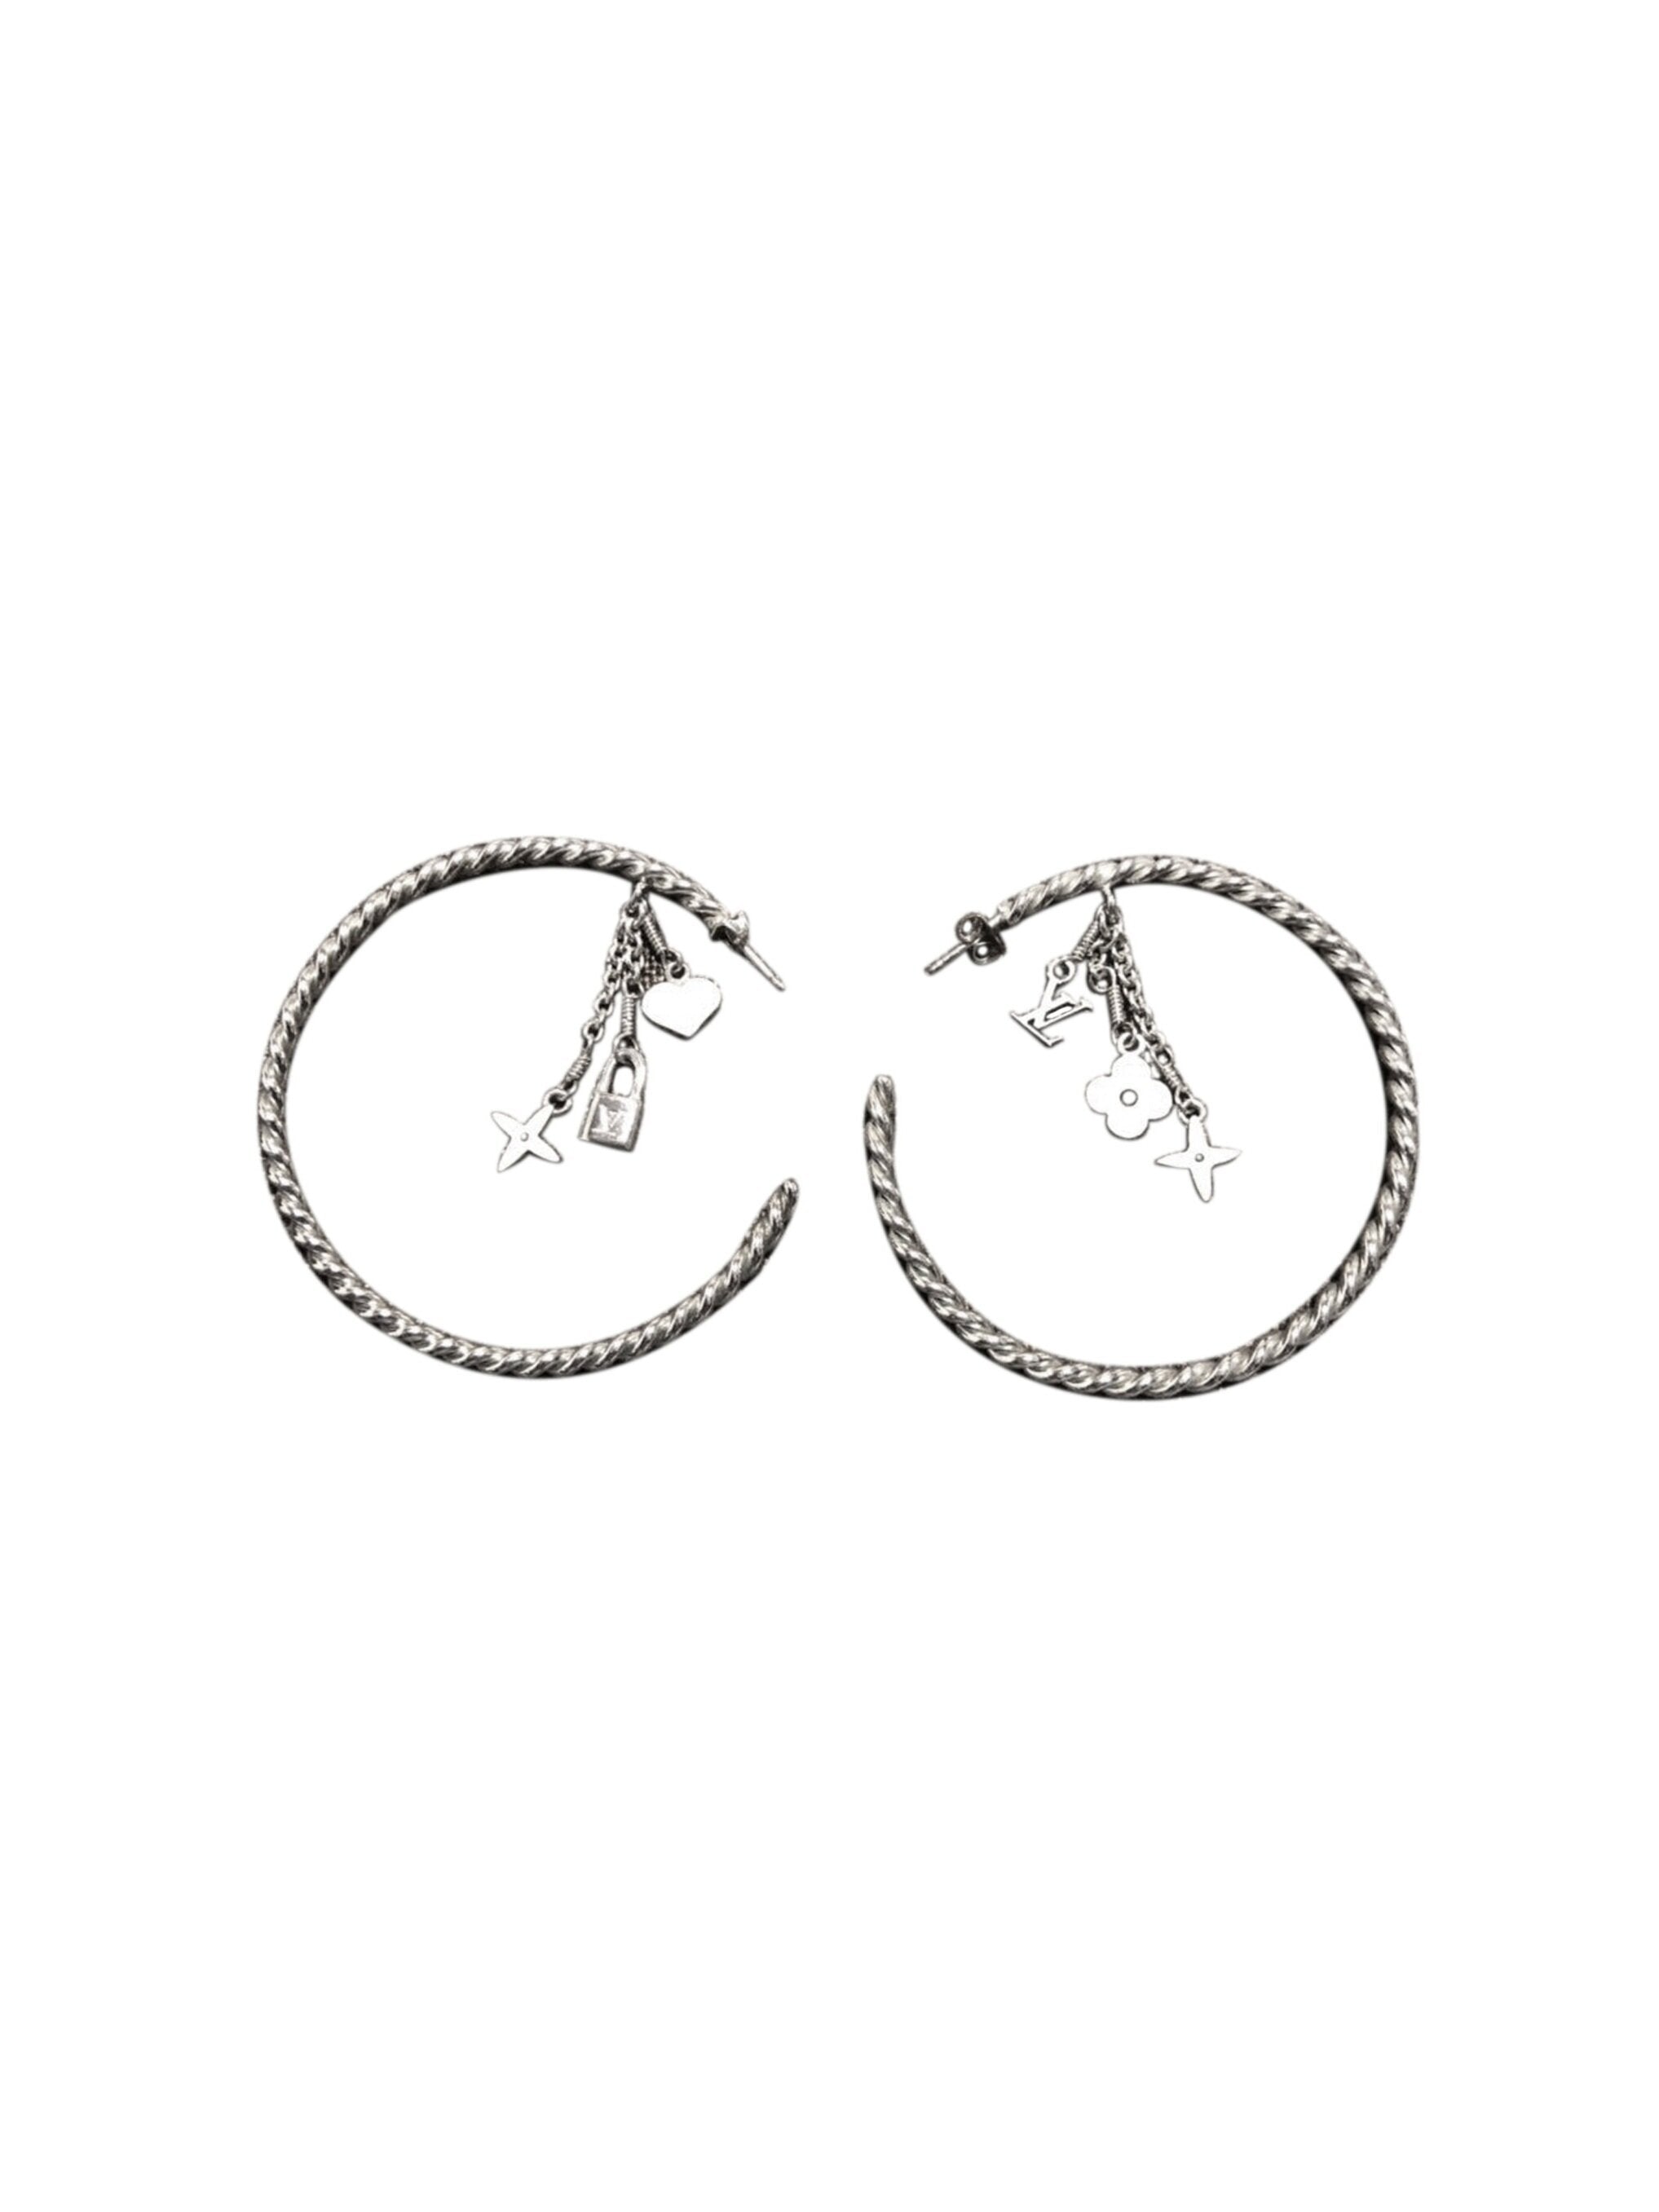 Louis Vuitton Silver/Black Monogram Sweet Large Hoop Earrings